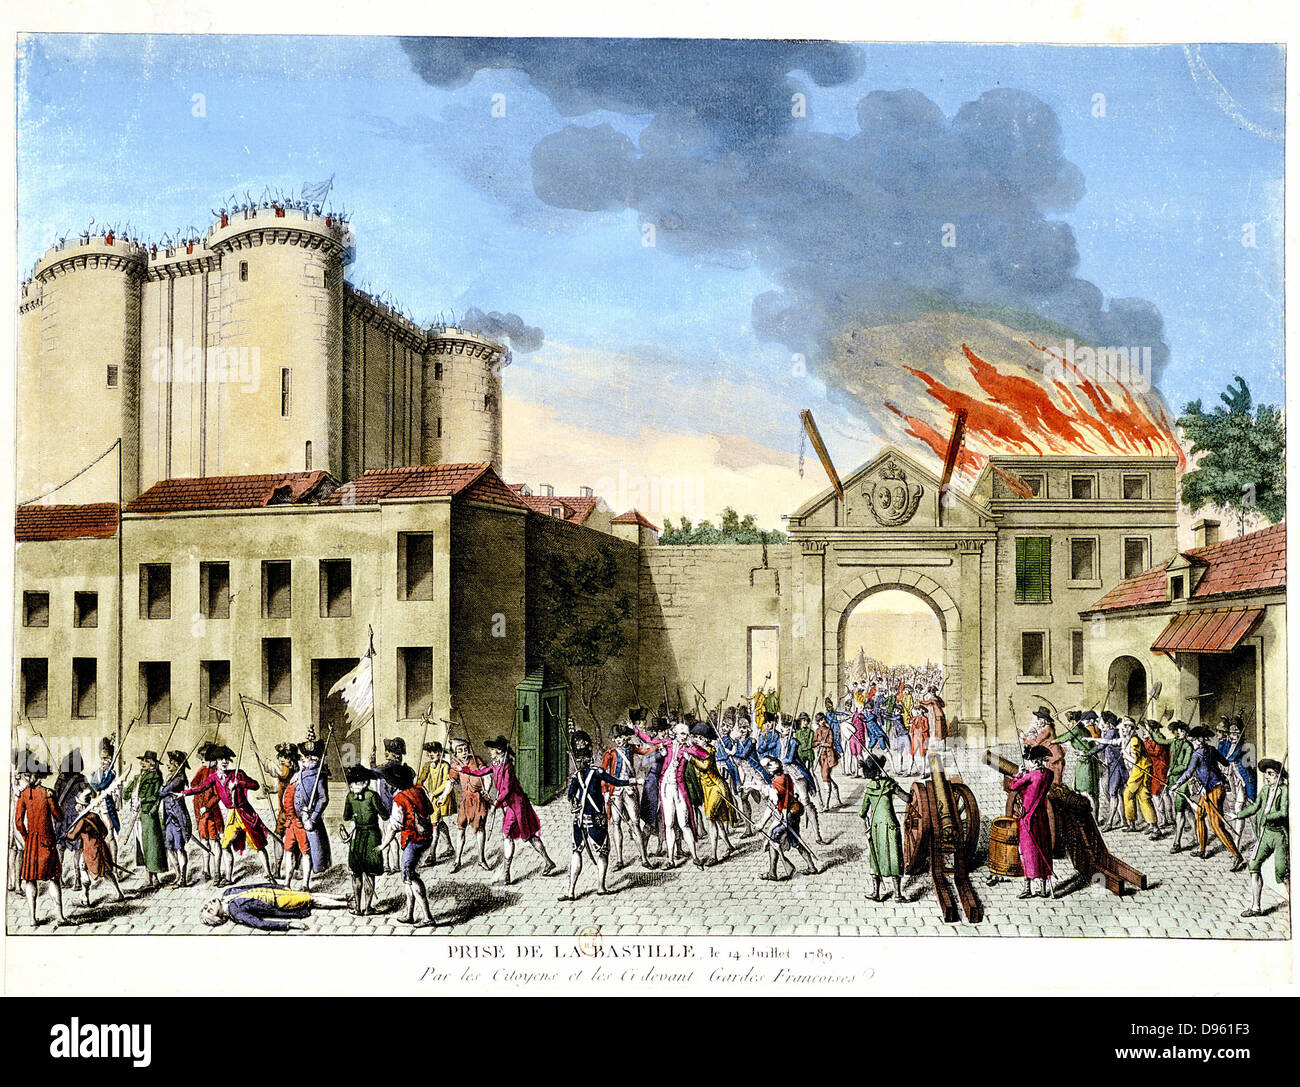 Révolution française, 1789. Prise de la Bastille, le 14 juillet 1789. Forteresse médiévale utilisée comme prison d'État français en 17e et 18e siècles. La main, la gravure. Banque D'Images